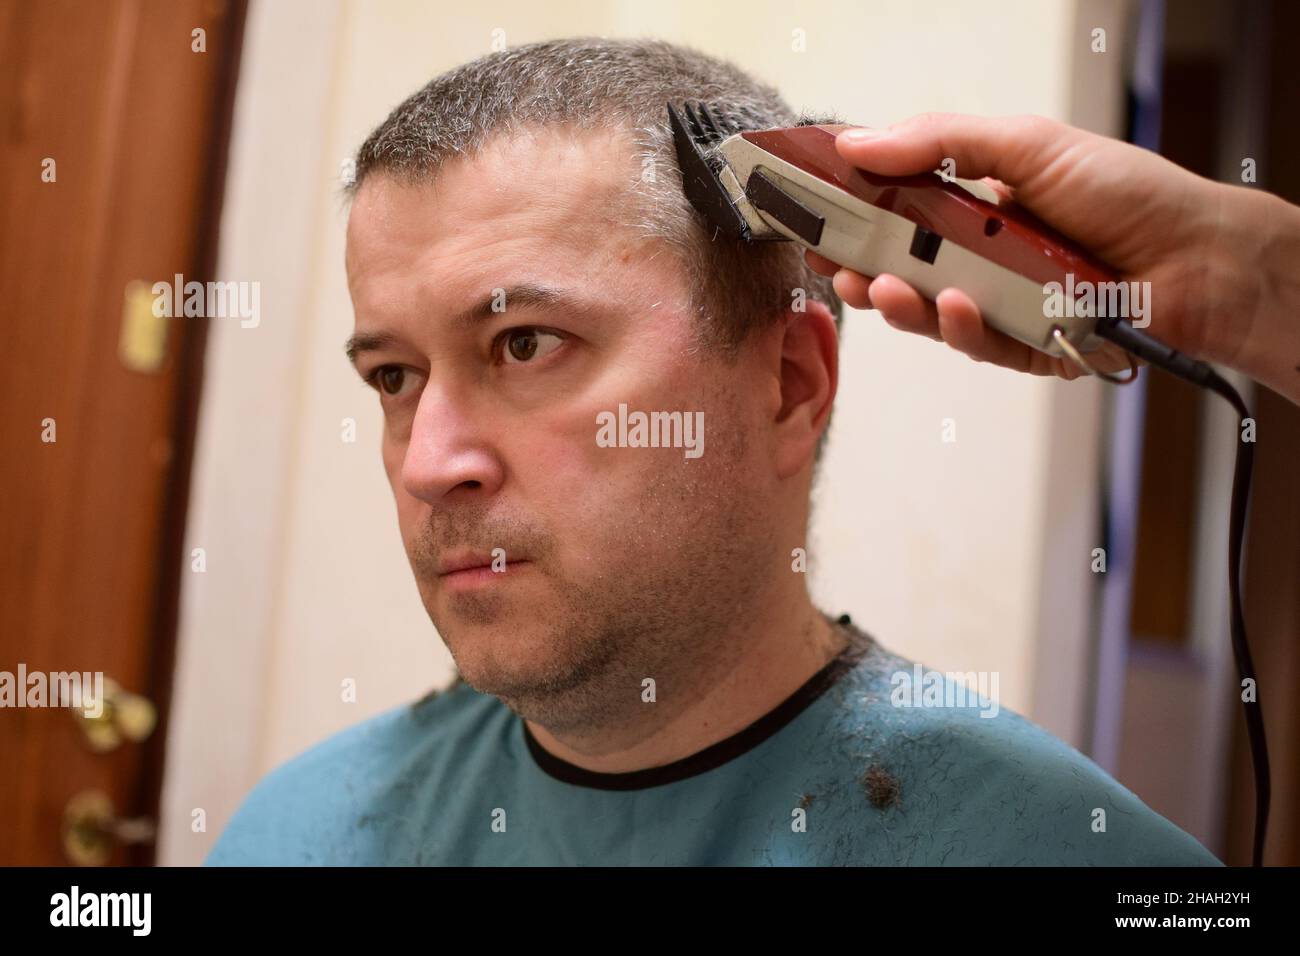 Un homme adulte est tondu avec une tondeuse à cheveux et s'assoit face à l'appareil photo.Peut-être à la maison dans un verrouillage Banque D'Images